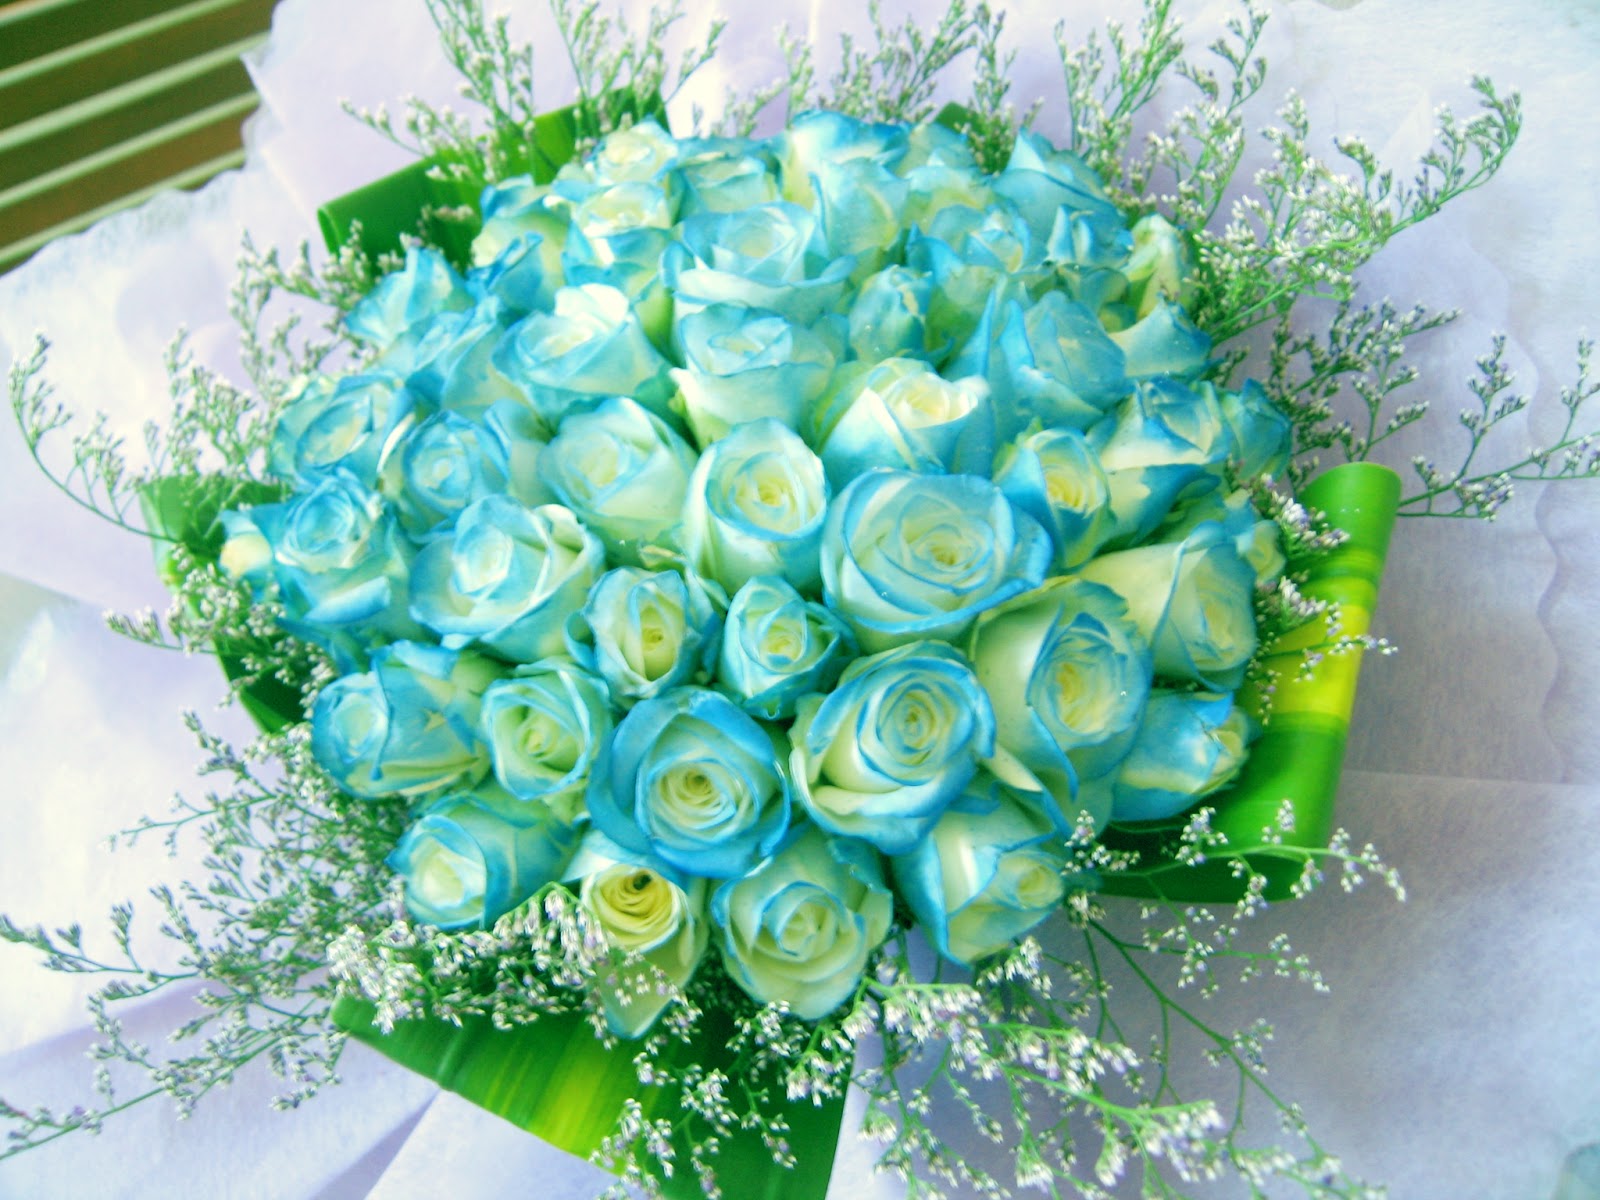 Hoa sinh nhật: Tặng hoa sinh nhật thật hoàn hảo với những bông hoa đầy sự tươi trẻ và màu sắc tươi mới. Hình ảnh chụp hoa sinh nhật chắc chắn sẽ khiến bạn muốn đặt ngay cho người thân yêu của mình một bó hoa tươi tắn với những màu sắc nổi bật.